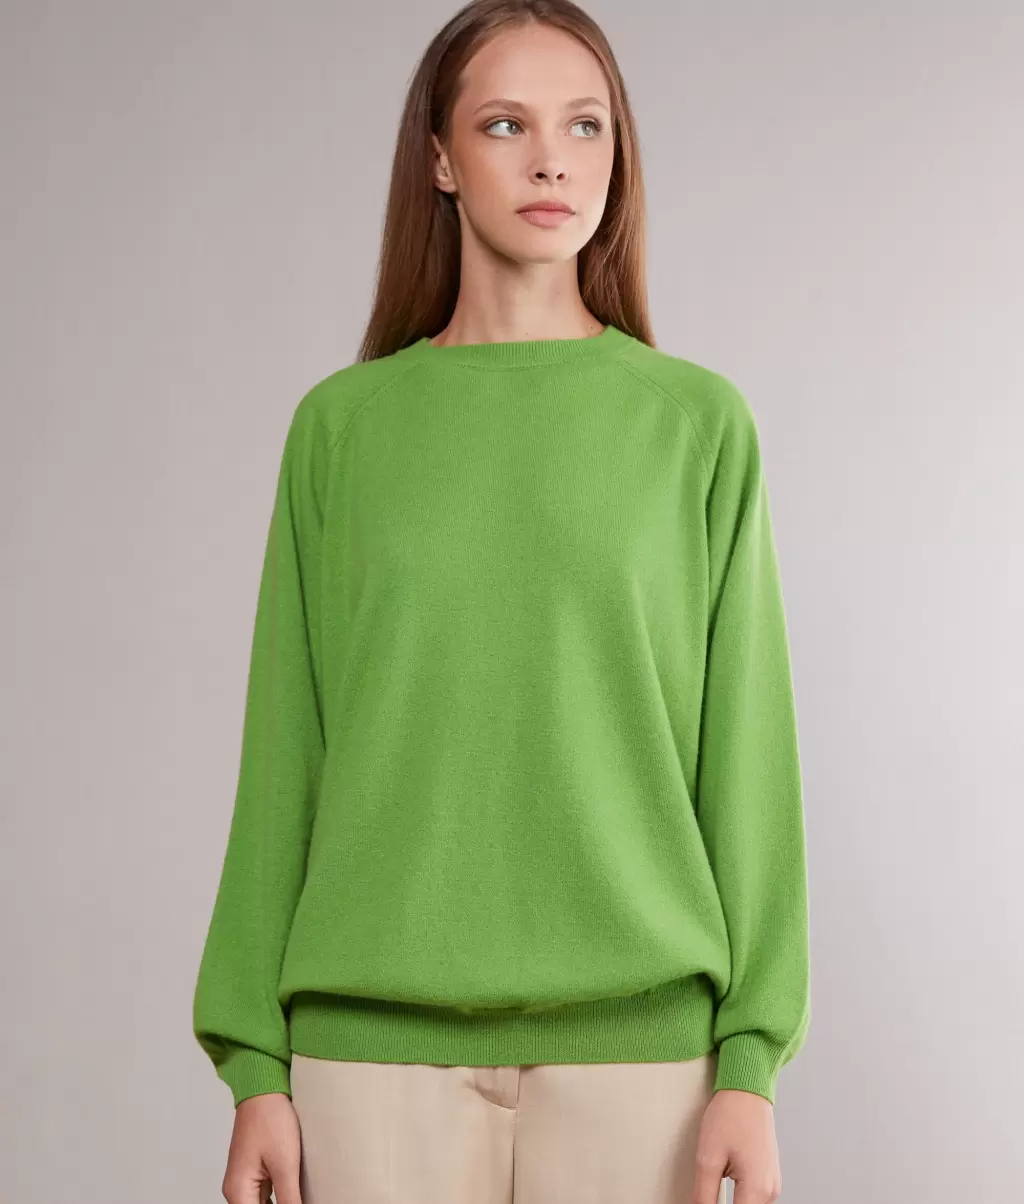 Falconeri Swetry Z Okrągłym Dekoltem Kobieta Bluzka Maxi Z Okągłym Dekoltem Z Kaszmiru Ultrasoft Green - 1